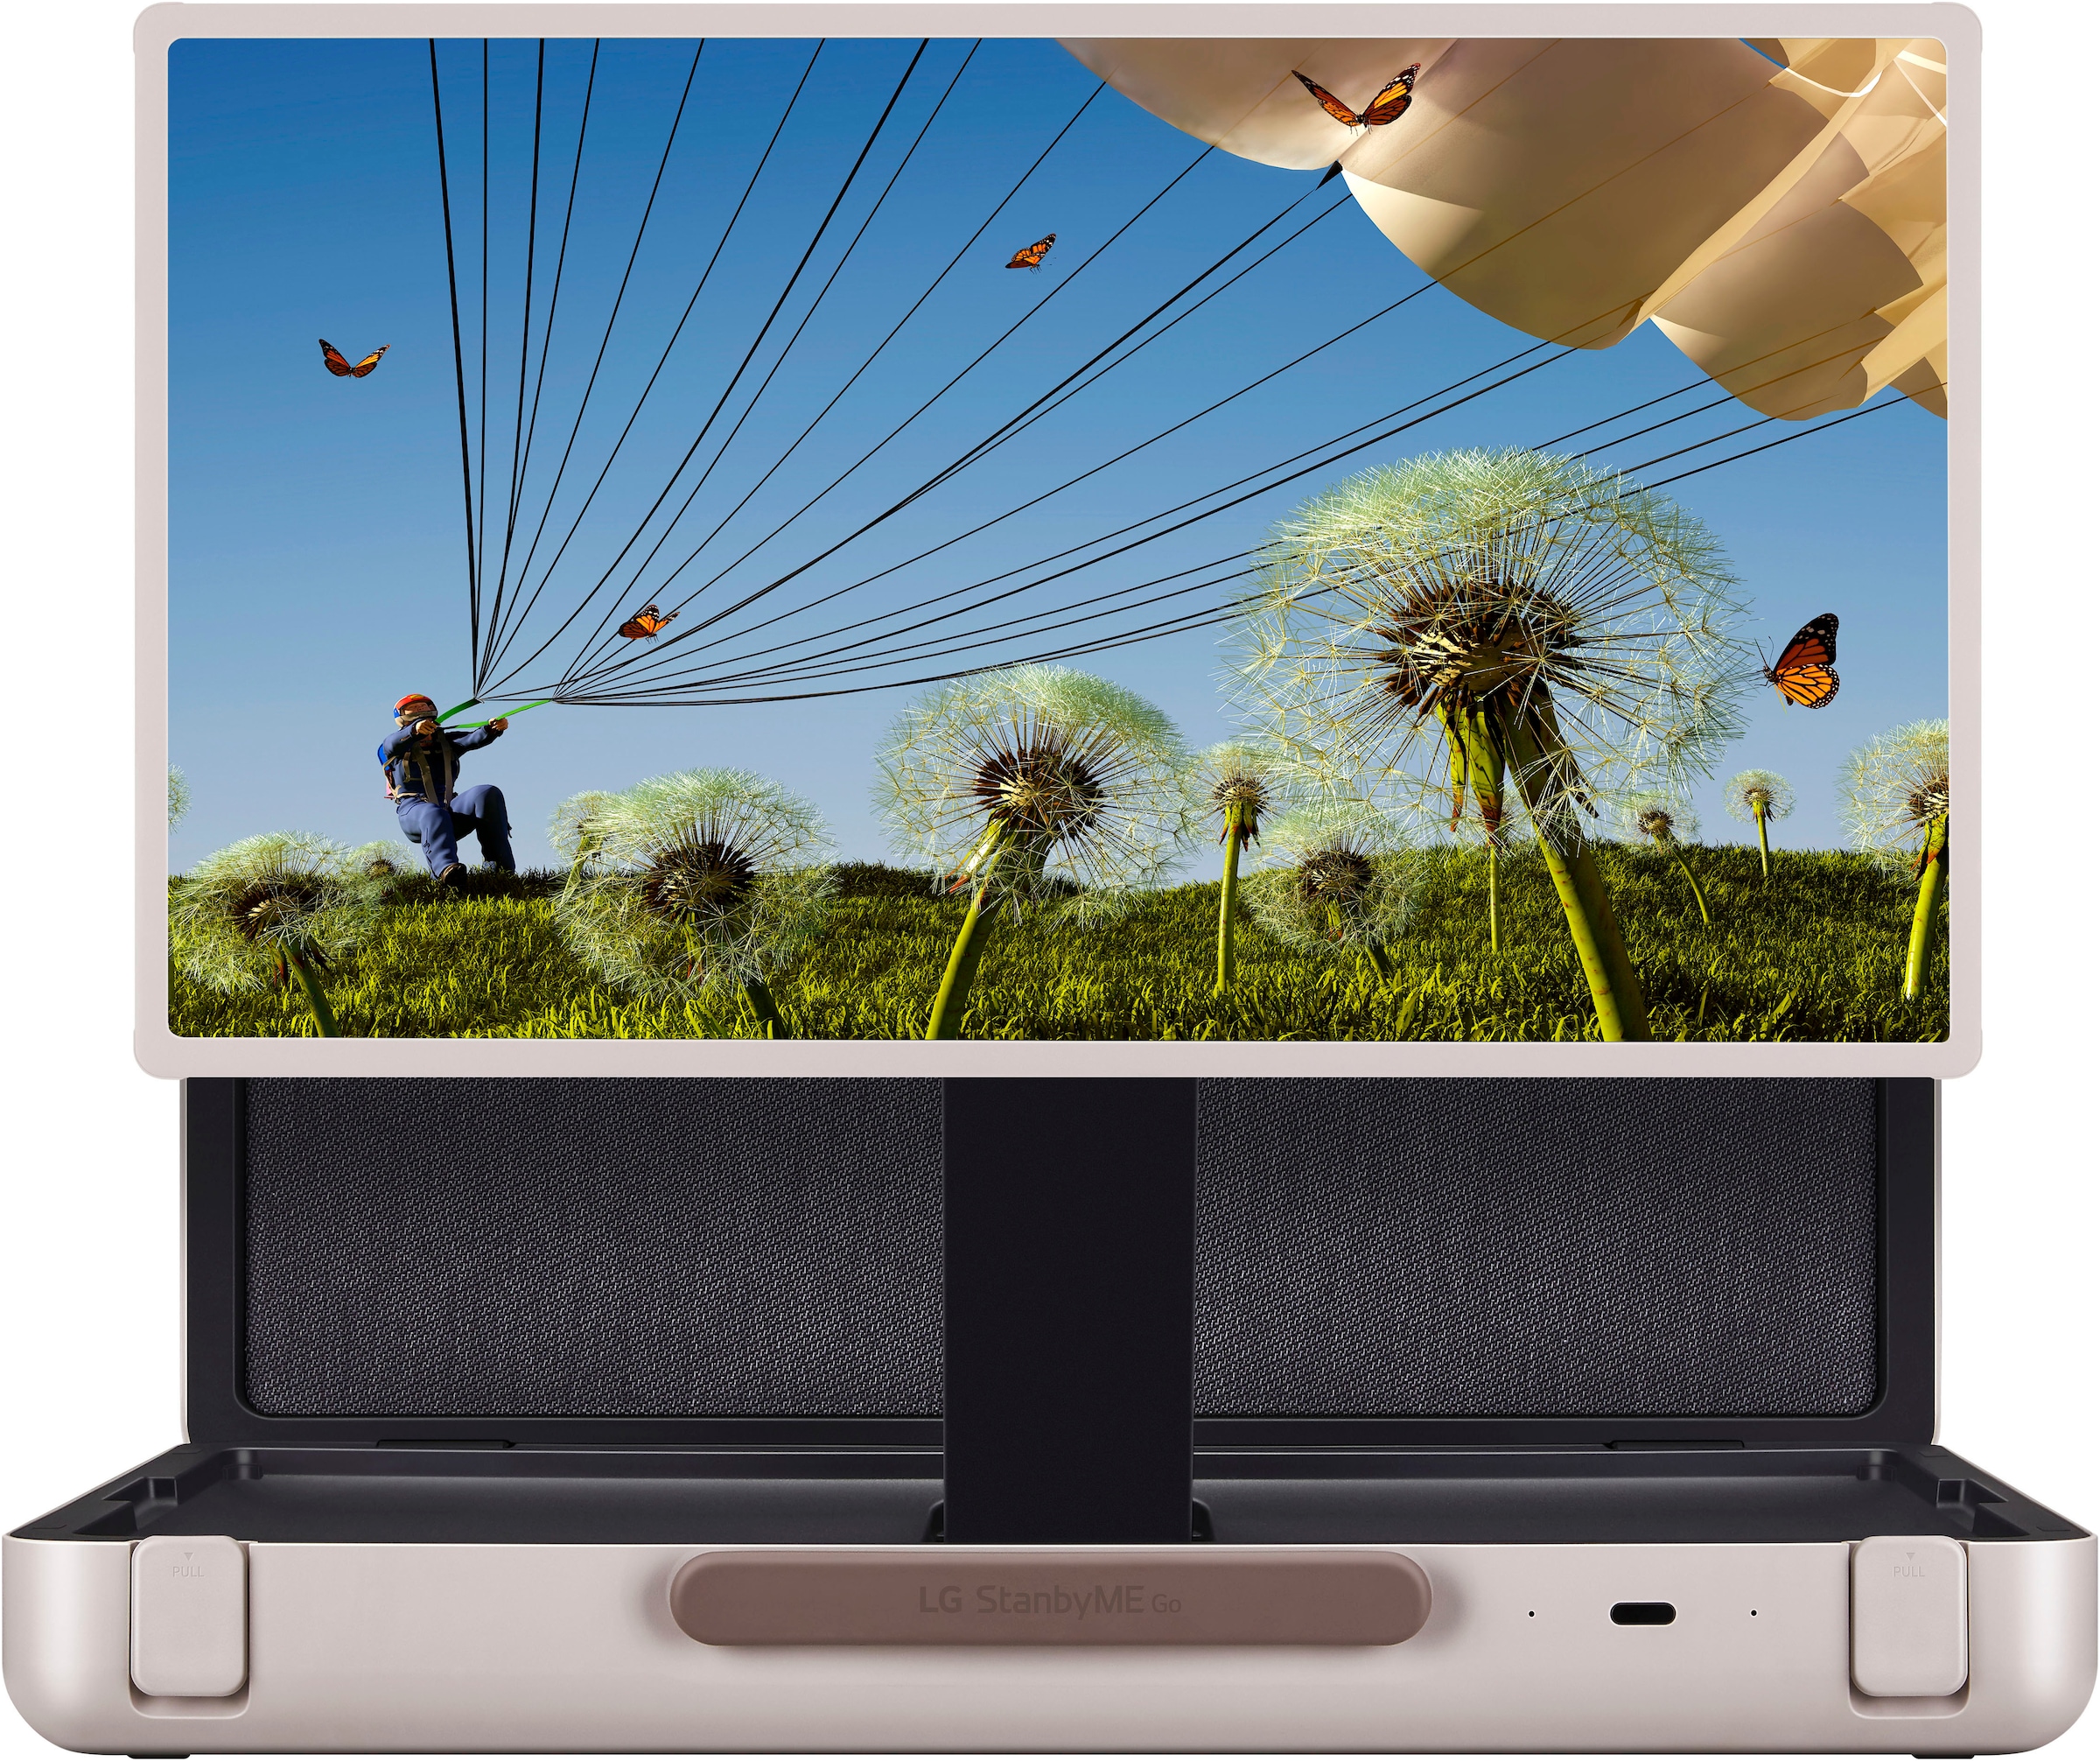 LG LED-Fernseher, 68 cm/27 Zoll, Full HD, Smart-TV